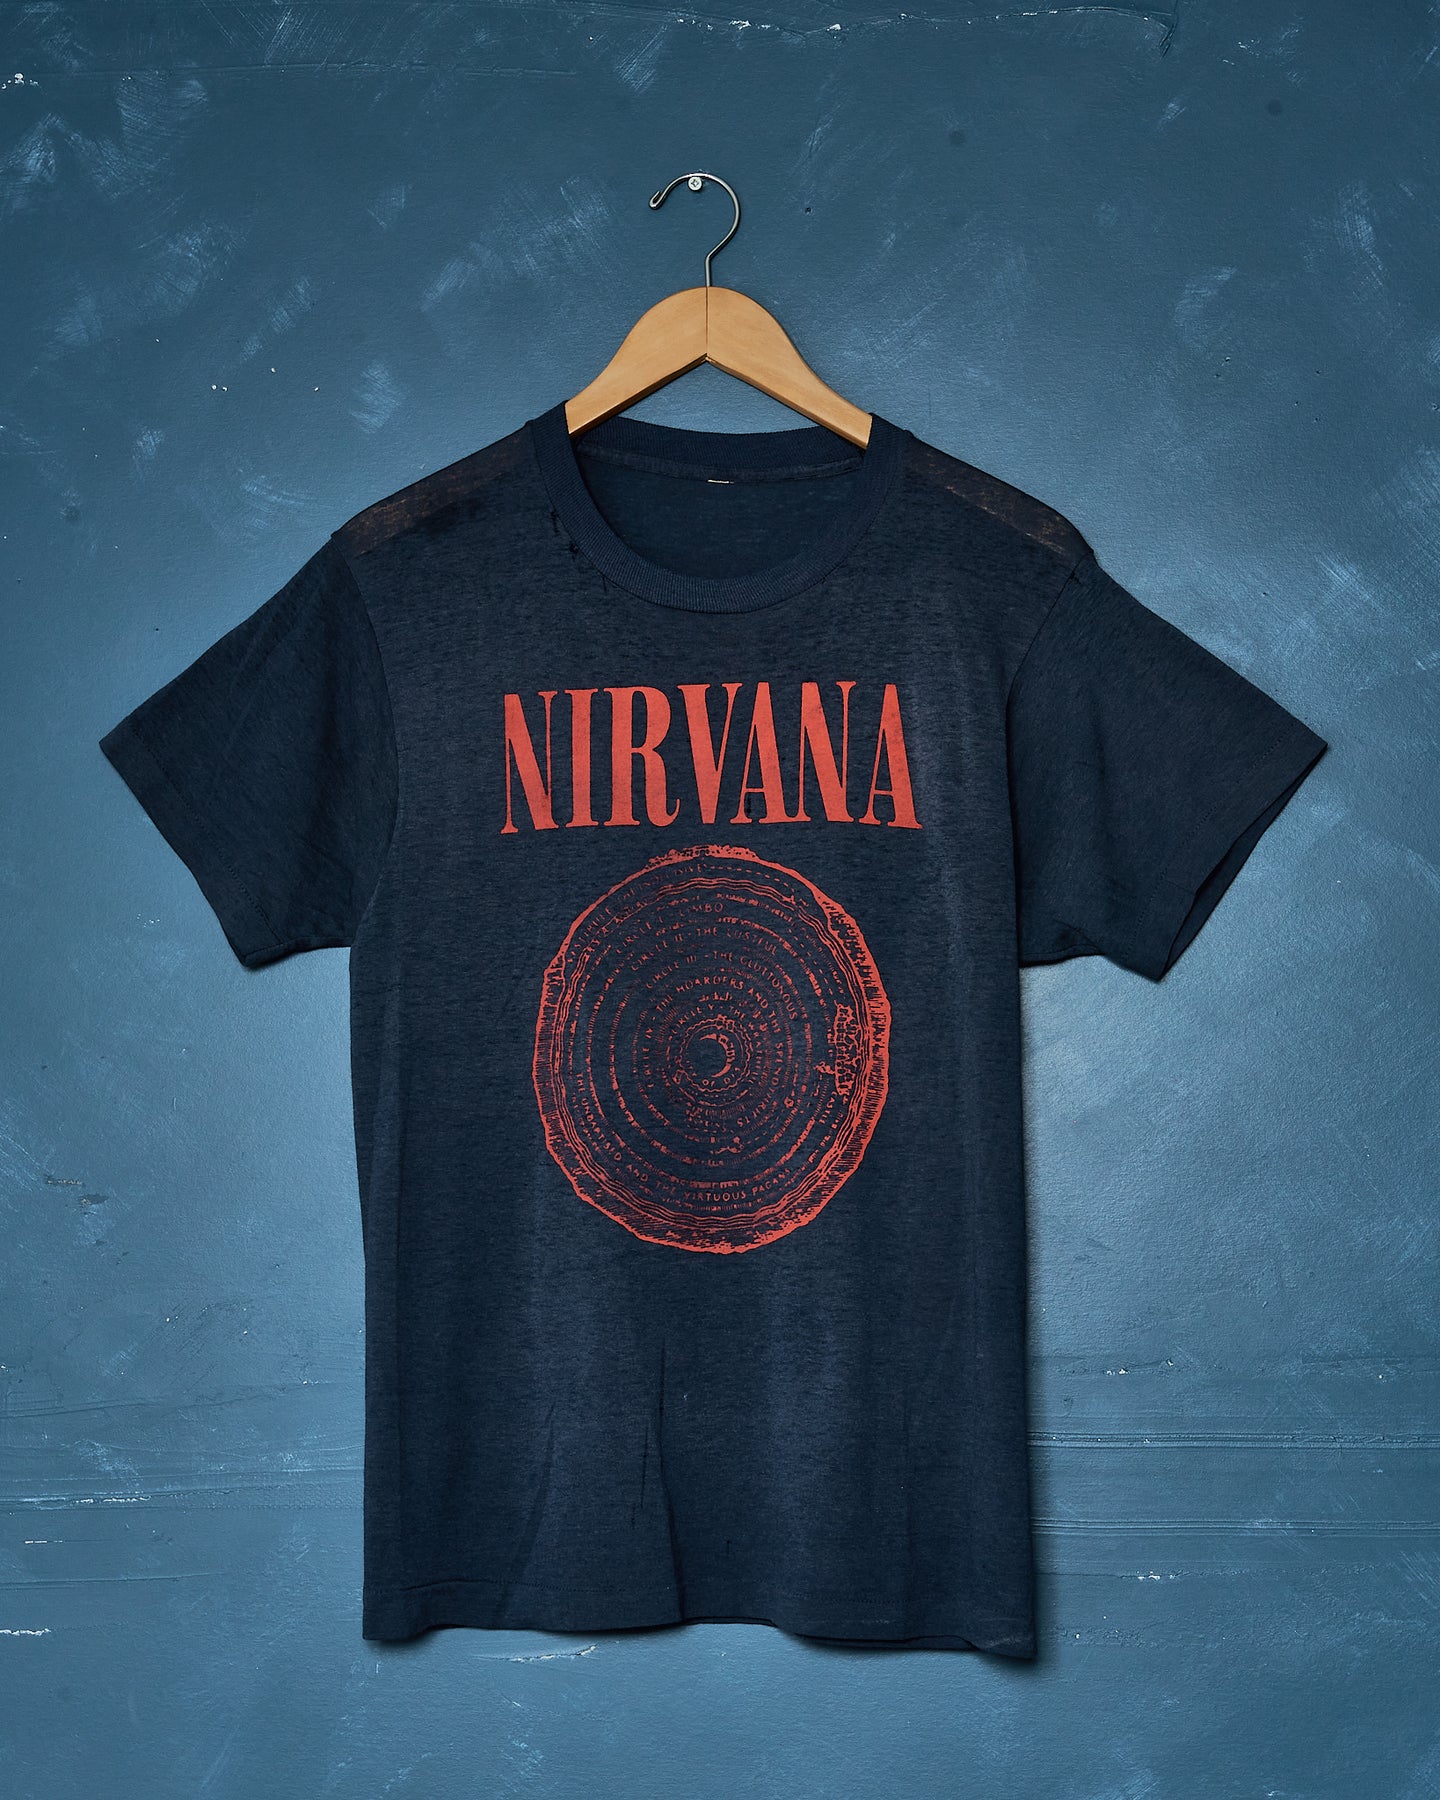 1989 Nirvana Vestibule Sub Pop Tee